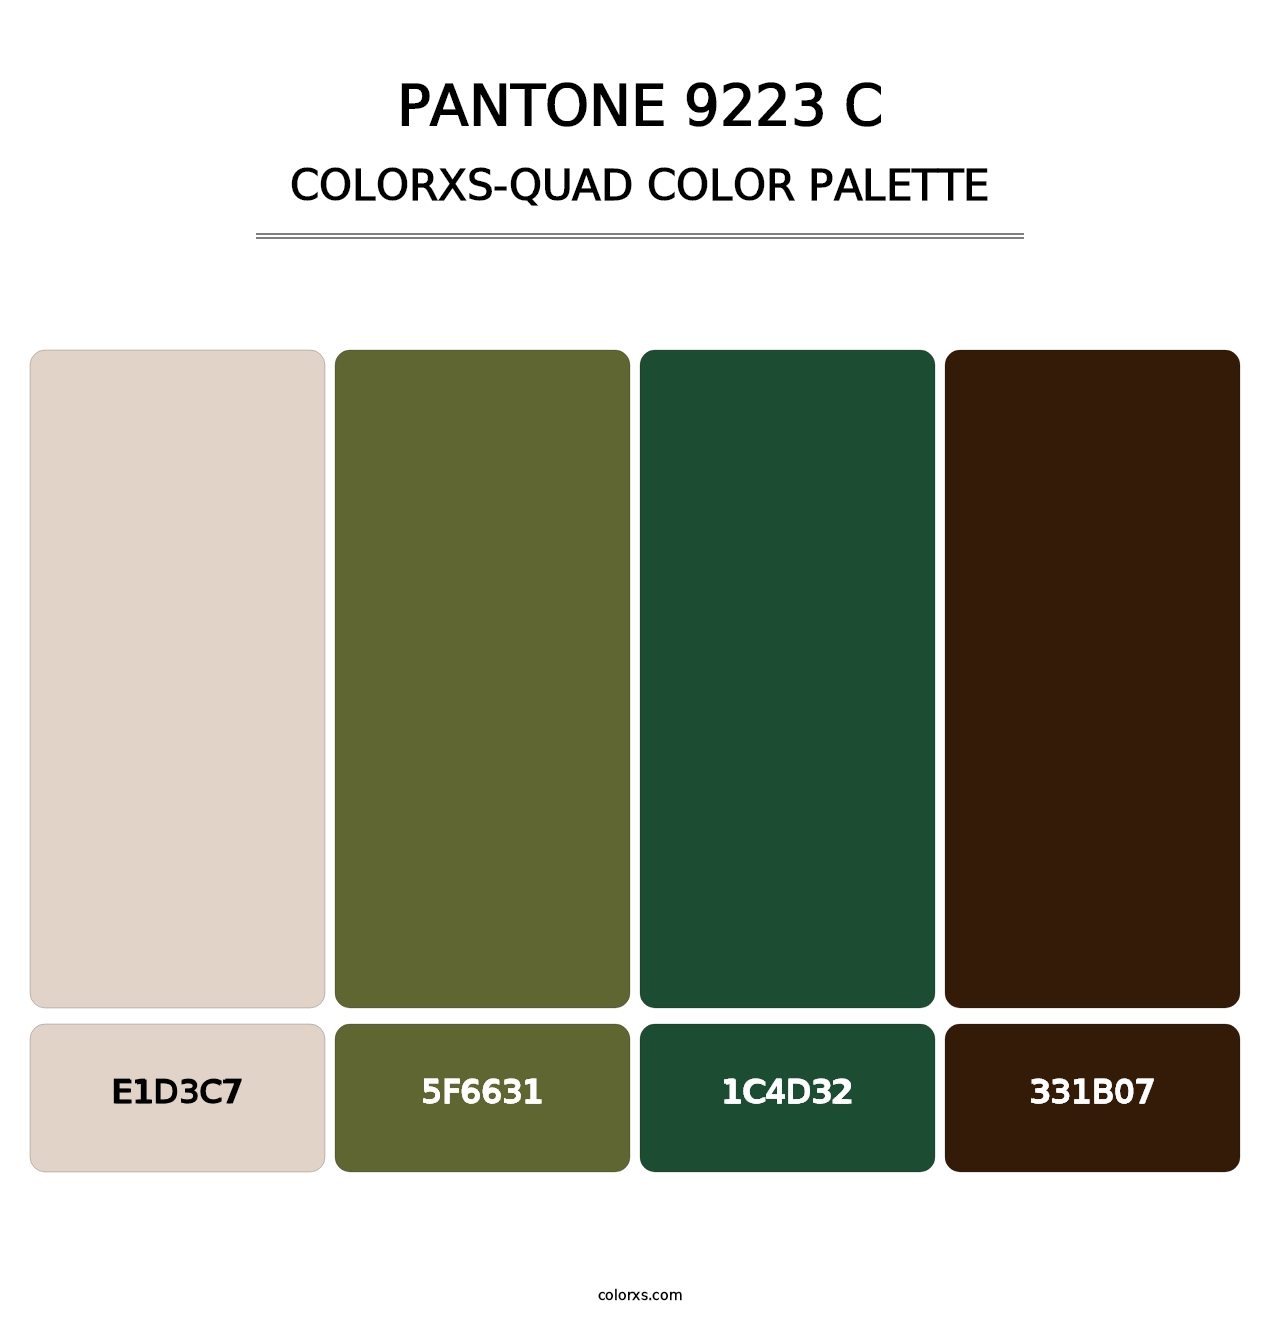 PANTONE 9223 C - Colorxs Quad Palette